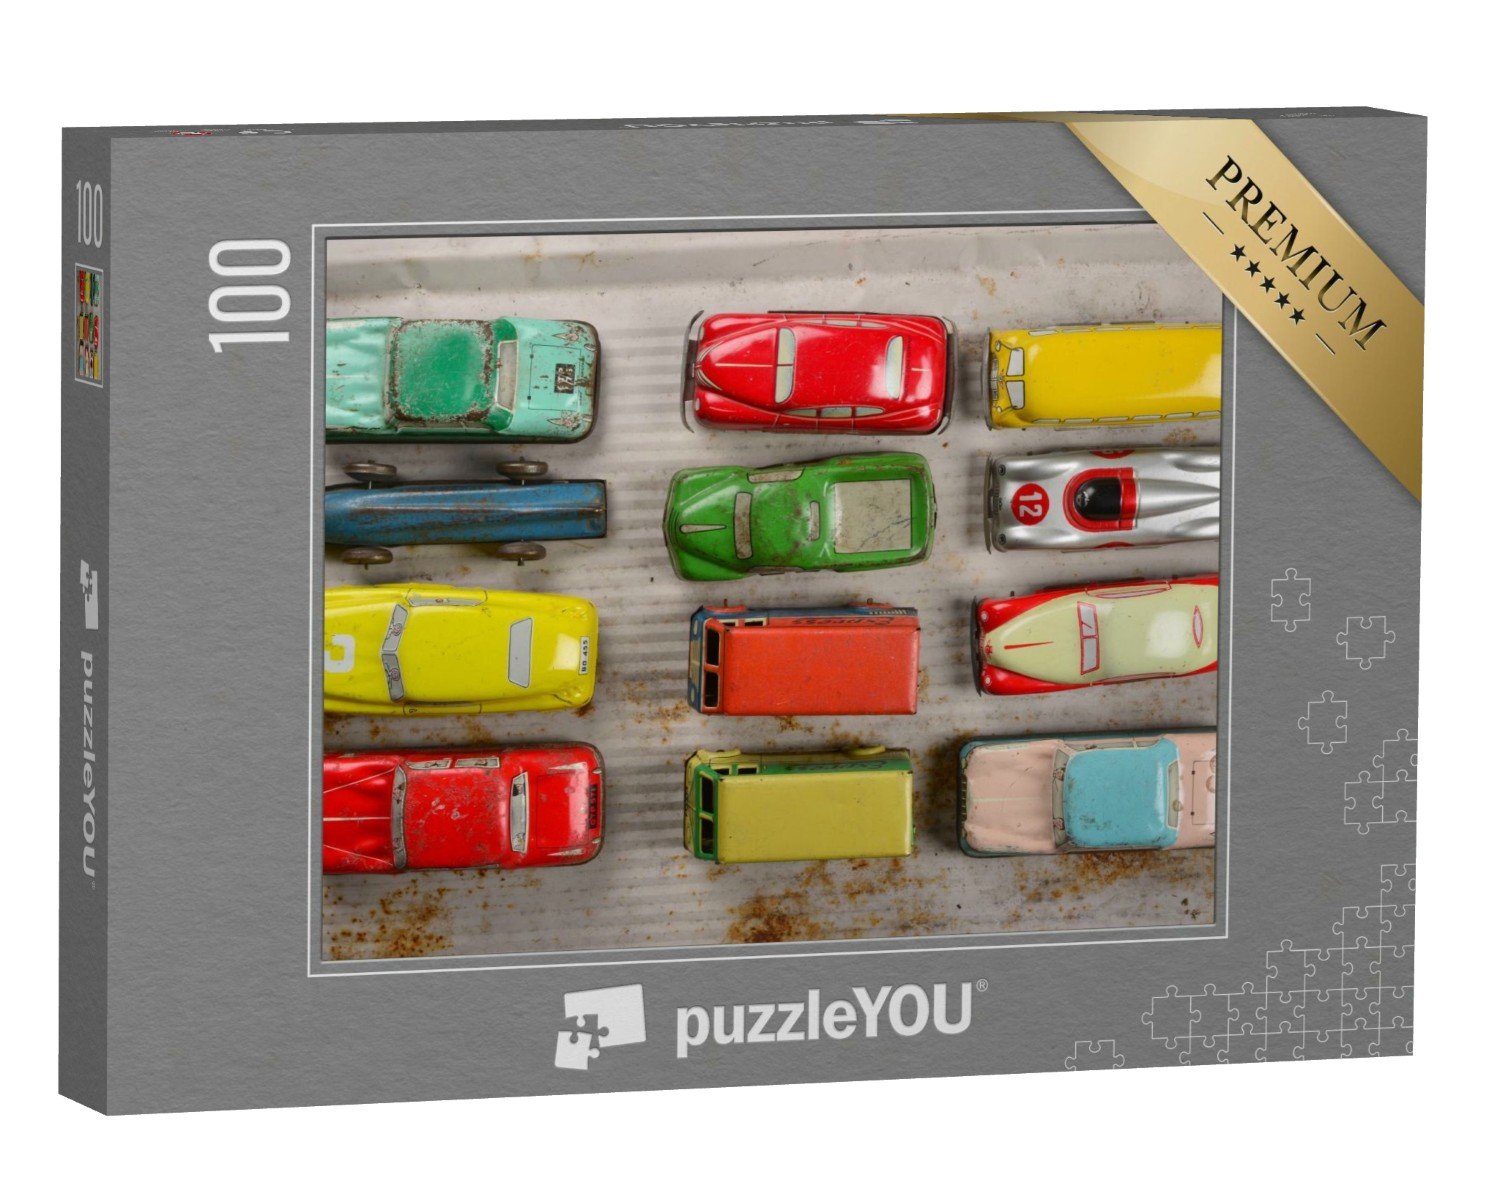 puzzleYOU Puzzle Sammlung von Vintage-Spielzeugautos, 100 Puzzleteile, puzzleYOU-Kollektionen Nostalgie